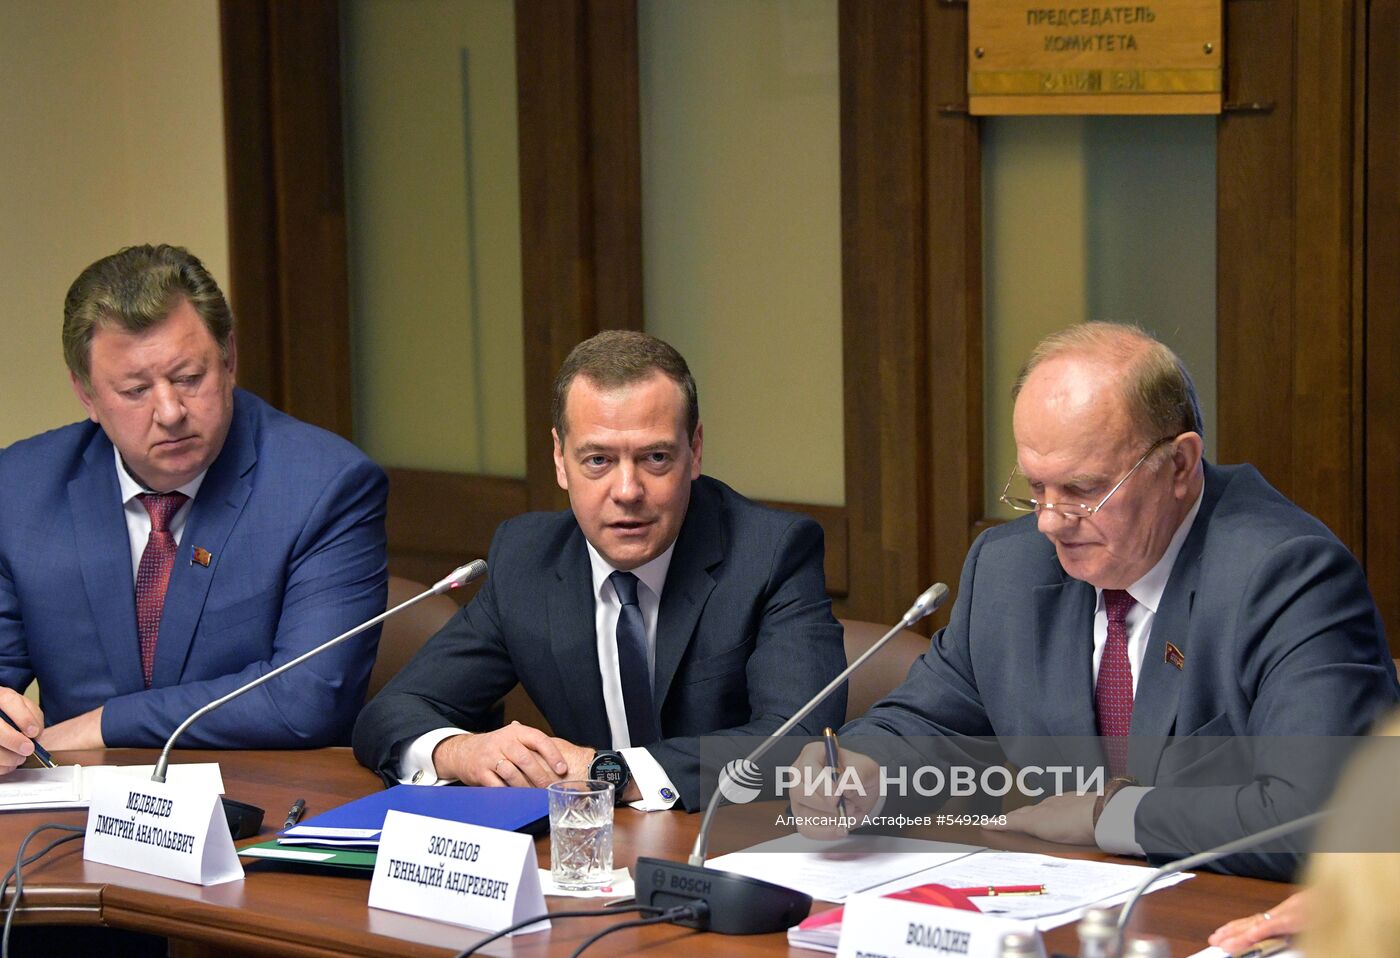 Кандидат на пост премьер-министра РФ Д. Медведев встретился с депутатами фракции КПРФ в Госдуме РФ